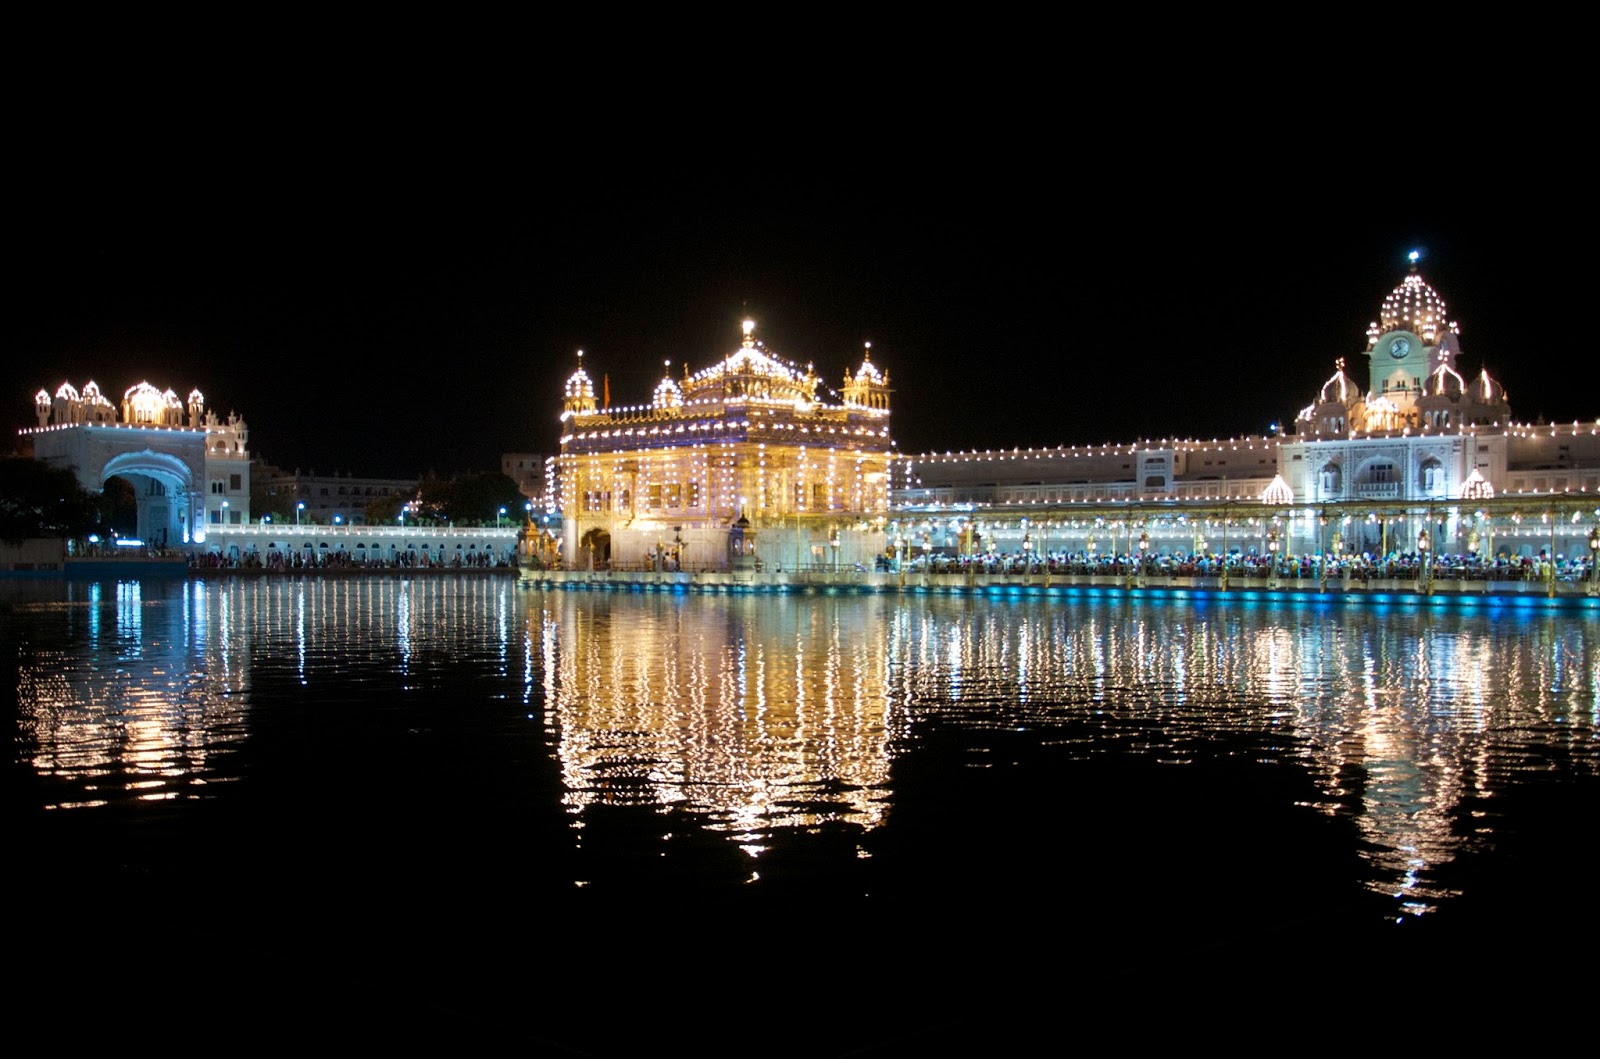 Lighting Golden Temple Amritsar Wallpaper - Hd Images Of Golden Temple At Night , HD Wallpaper & Backgrounds